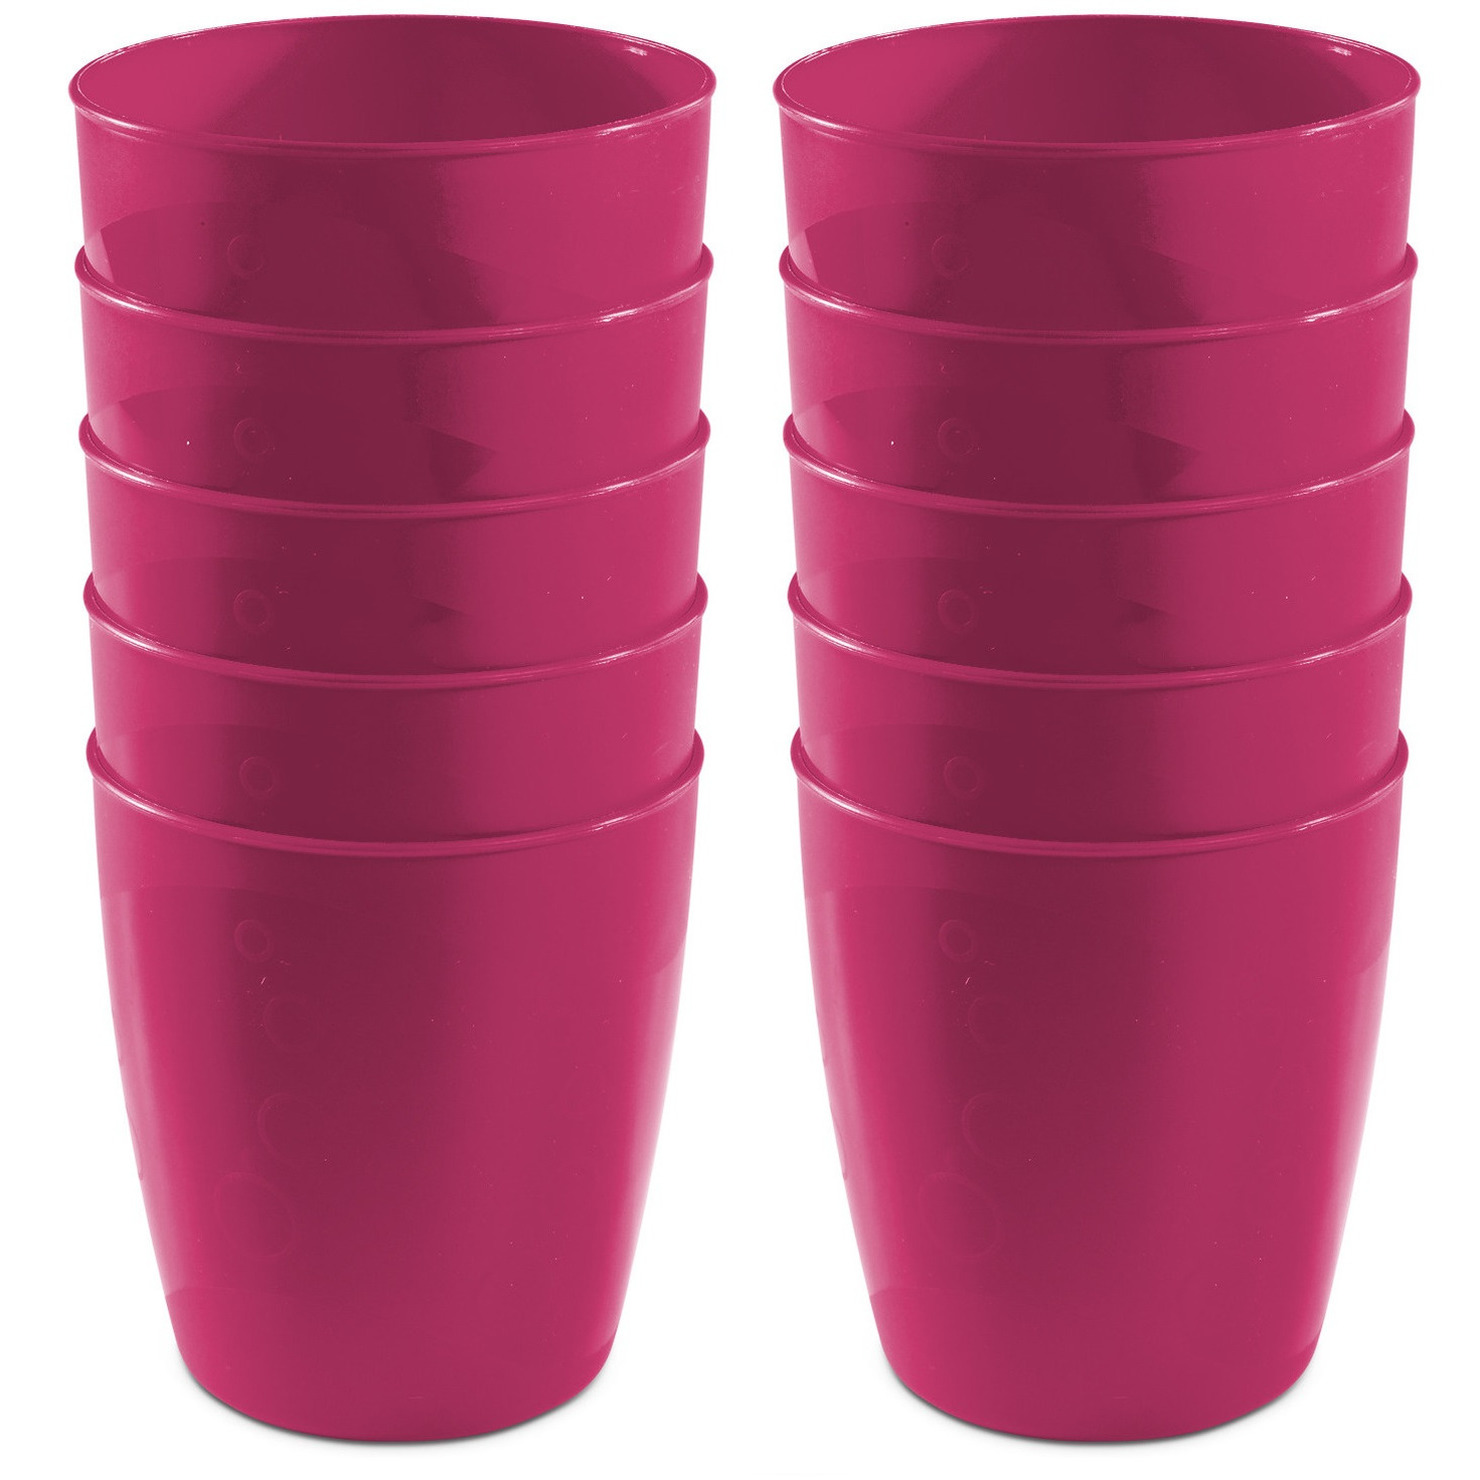 15x drinkbekers van kunststof 300 ml in het roze - Limonade bekers - Campingservies/picknickservies